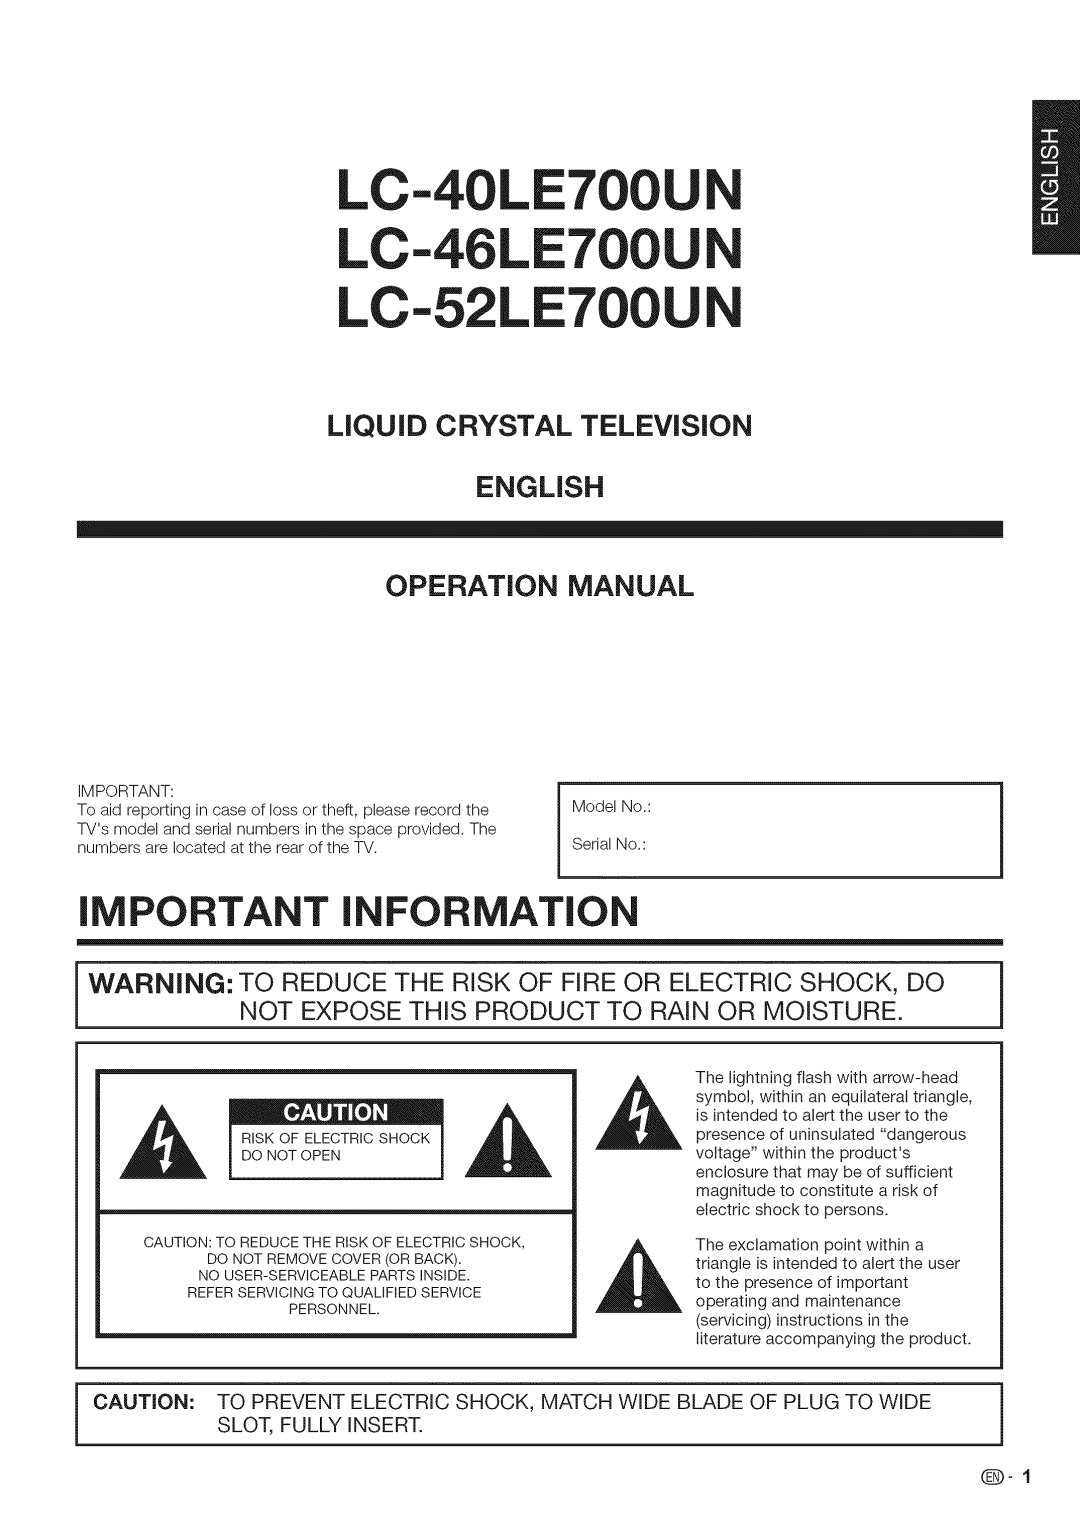 Sharp iMPORTANT INFORMATION, English Operation Manual, LC-40LE700U LC-46LE700U LC-52LE700U, LiQUiD CRYSTAL TELEViSiON 